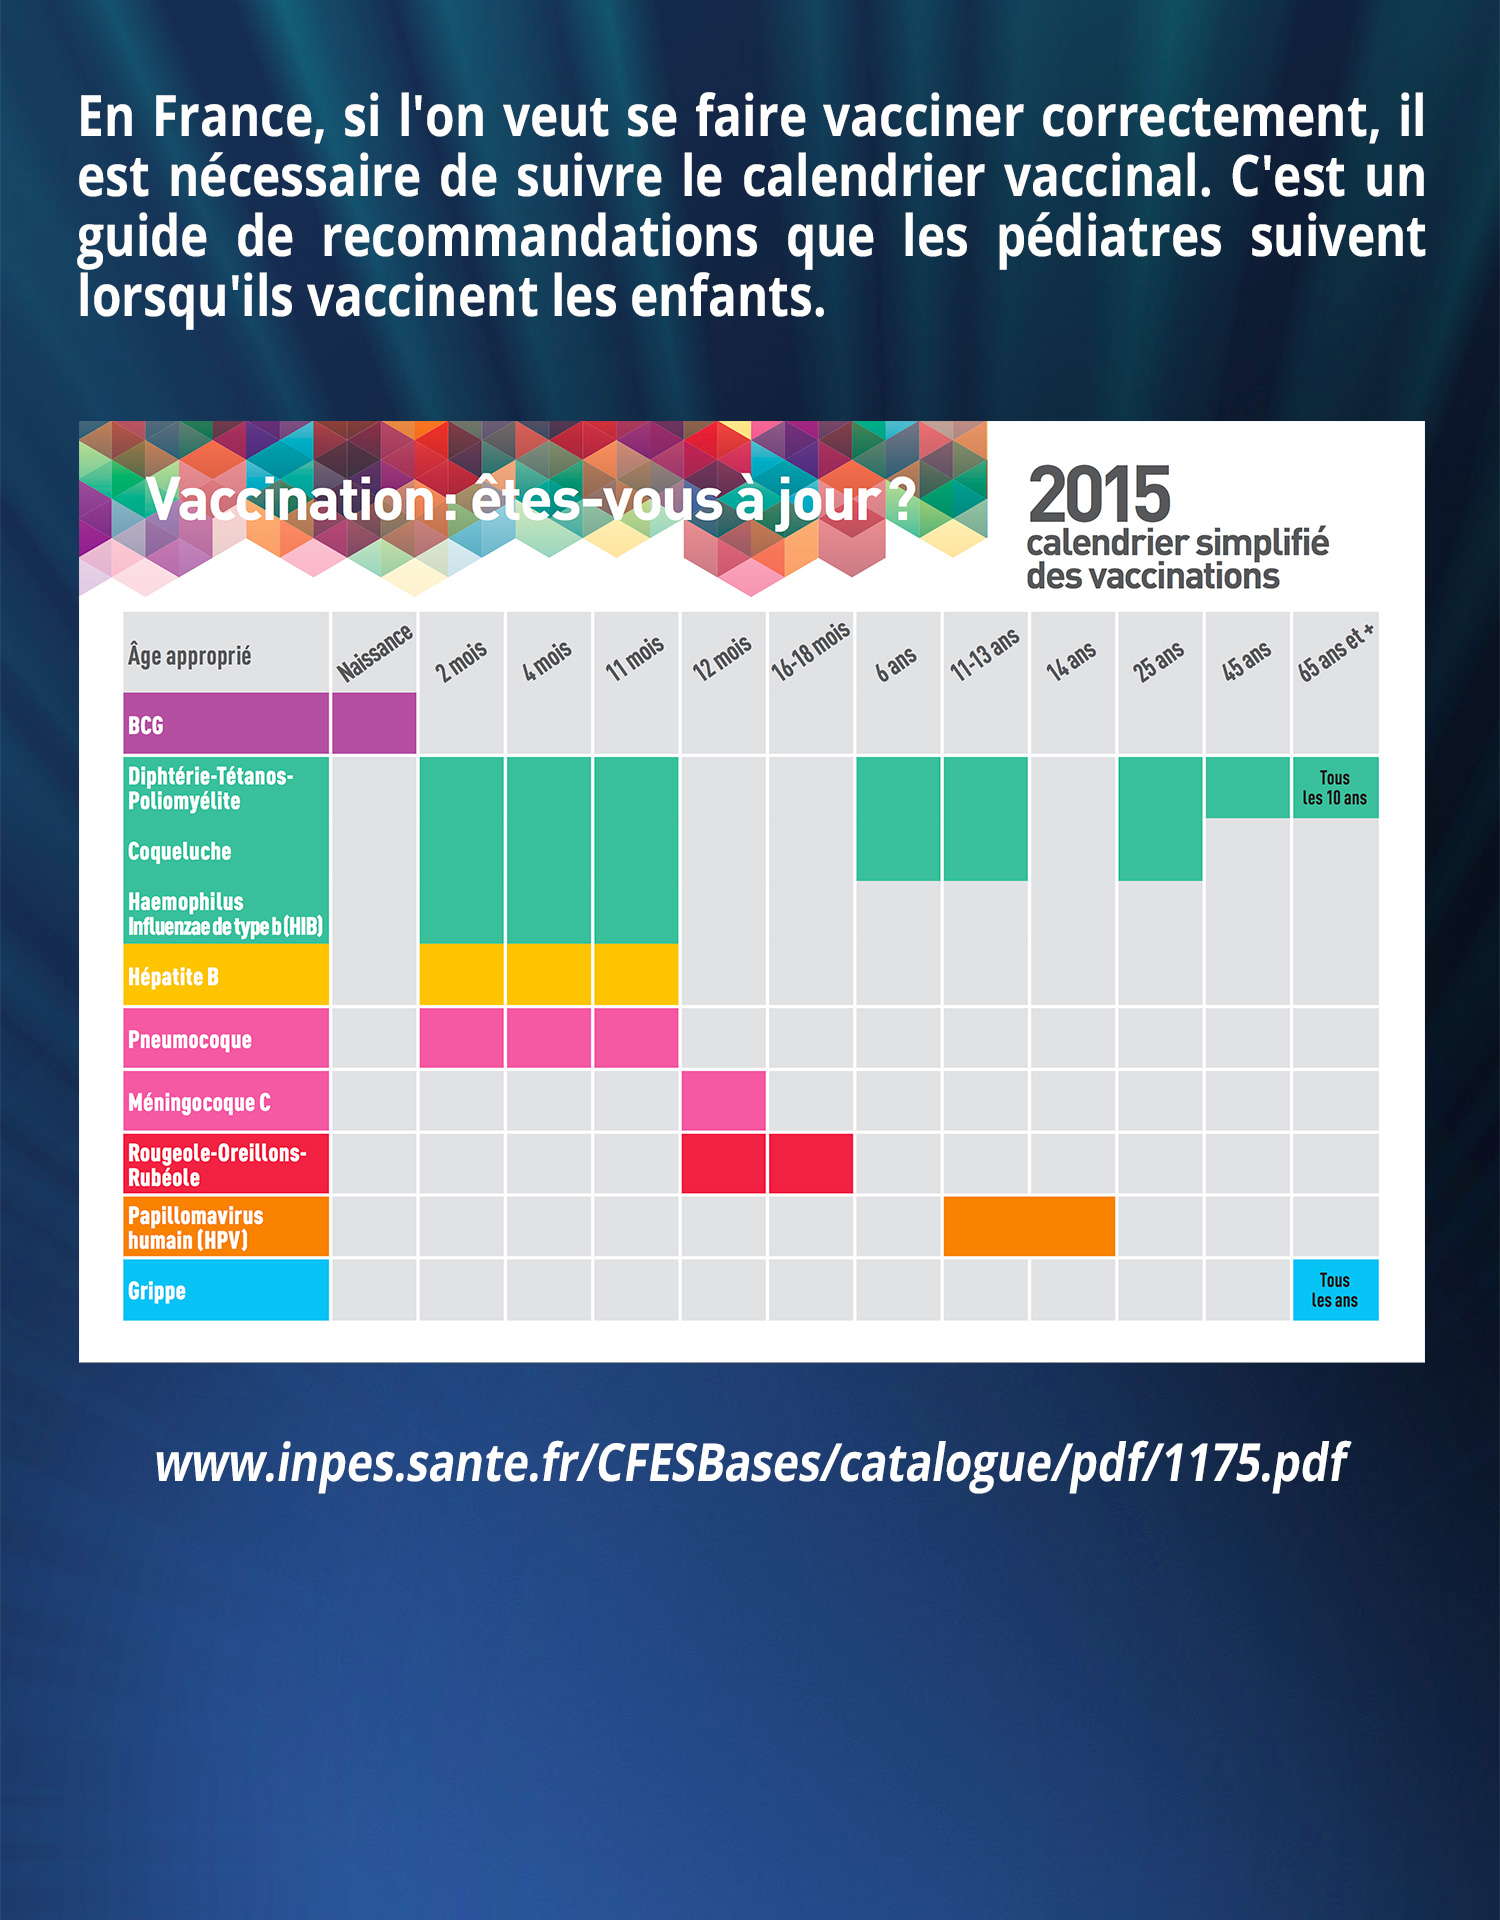 En France, si l'on veut se faire vacciner correctement, il est nécessaire de suivre le calendrier vaccinal. C'est un guide de recommandations que les pédiatres suivent lorsqu'ils vaccinent les enfants.